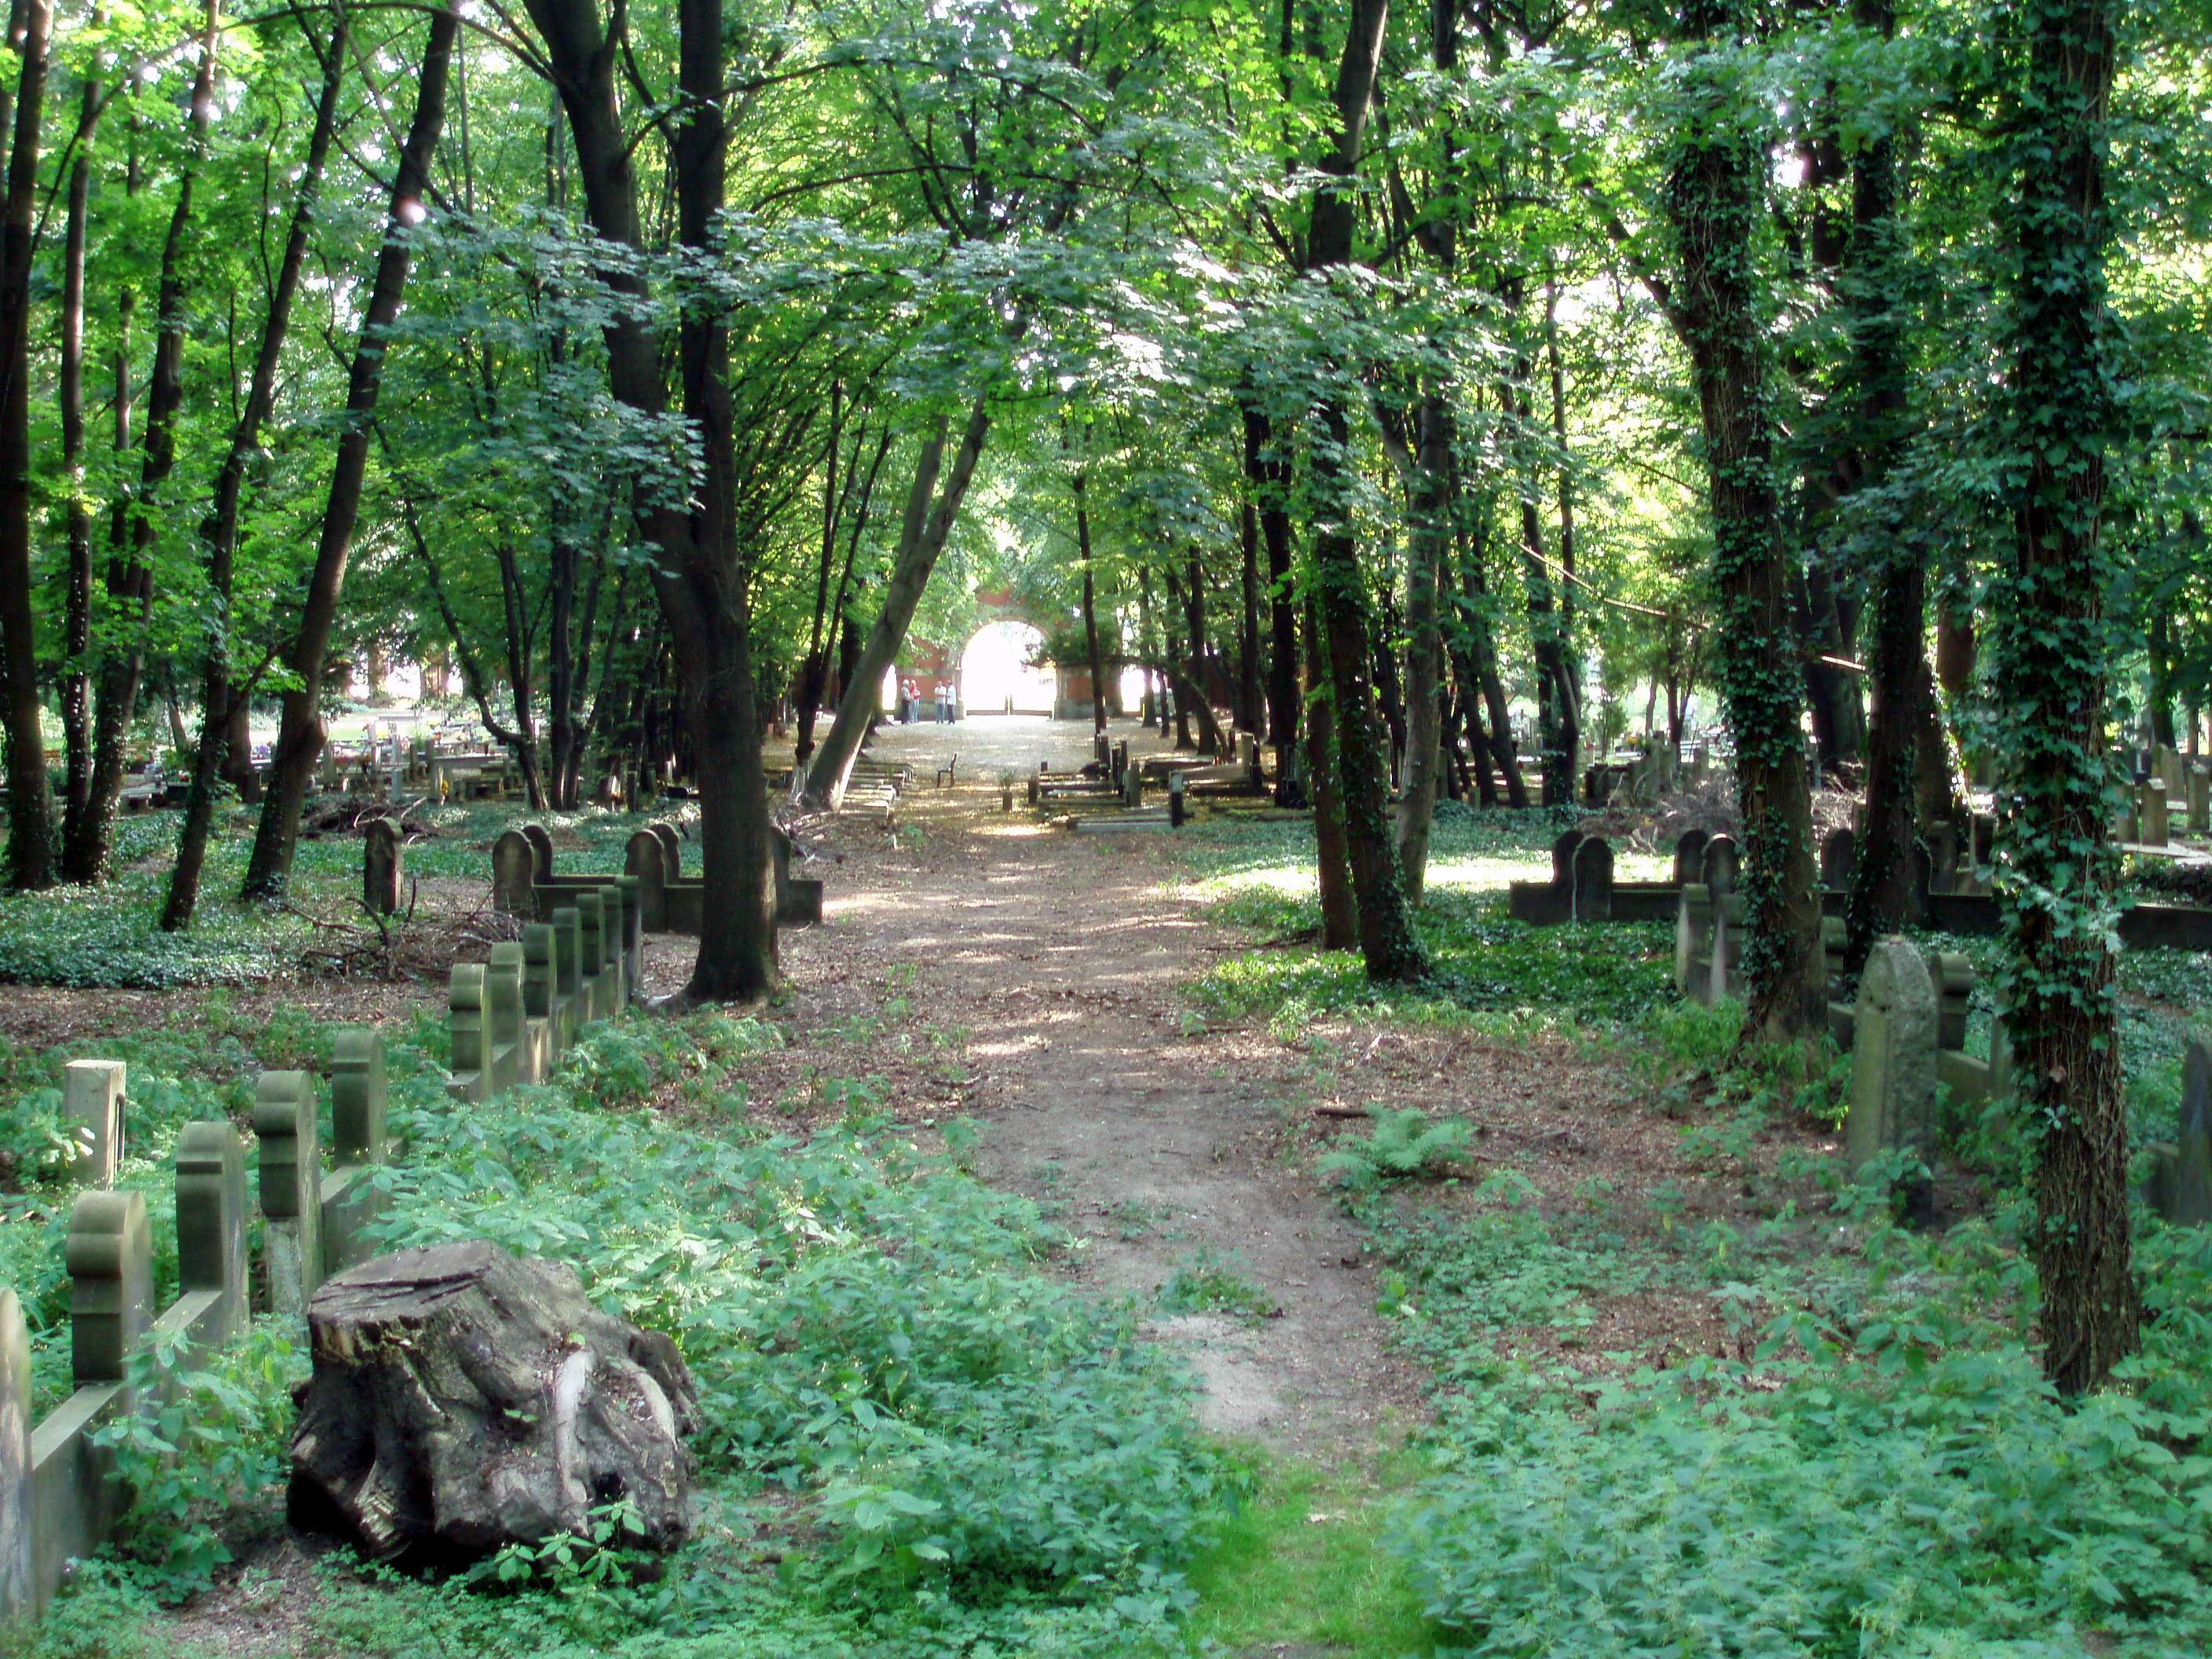 Neuer Jüdischer Friedhof in Breslau/Wrocław im Jahr 2007. Foto von Horst Blume